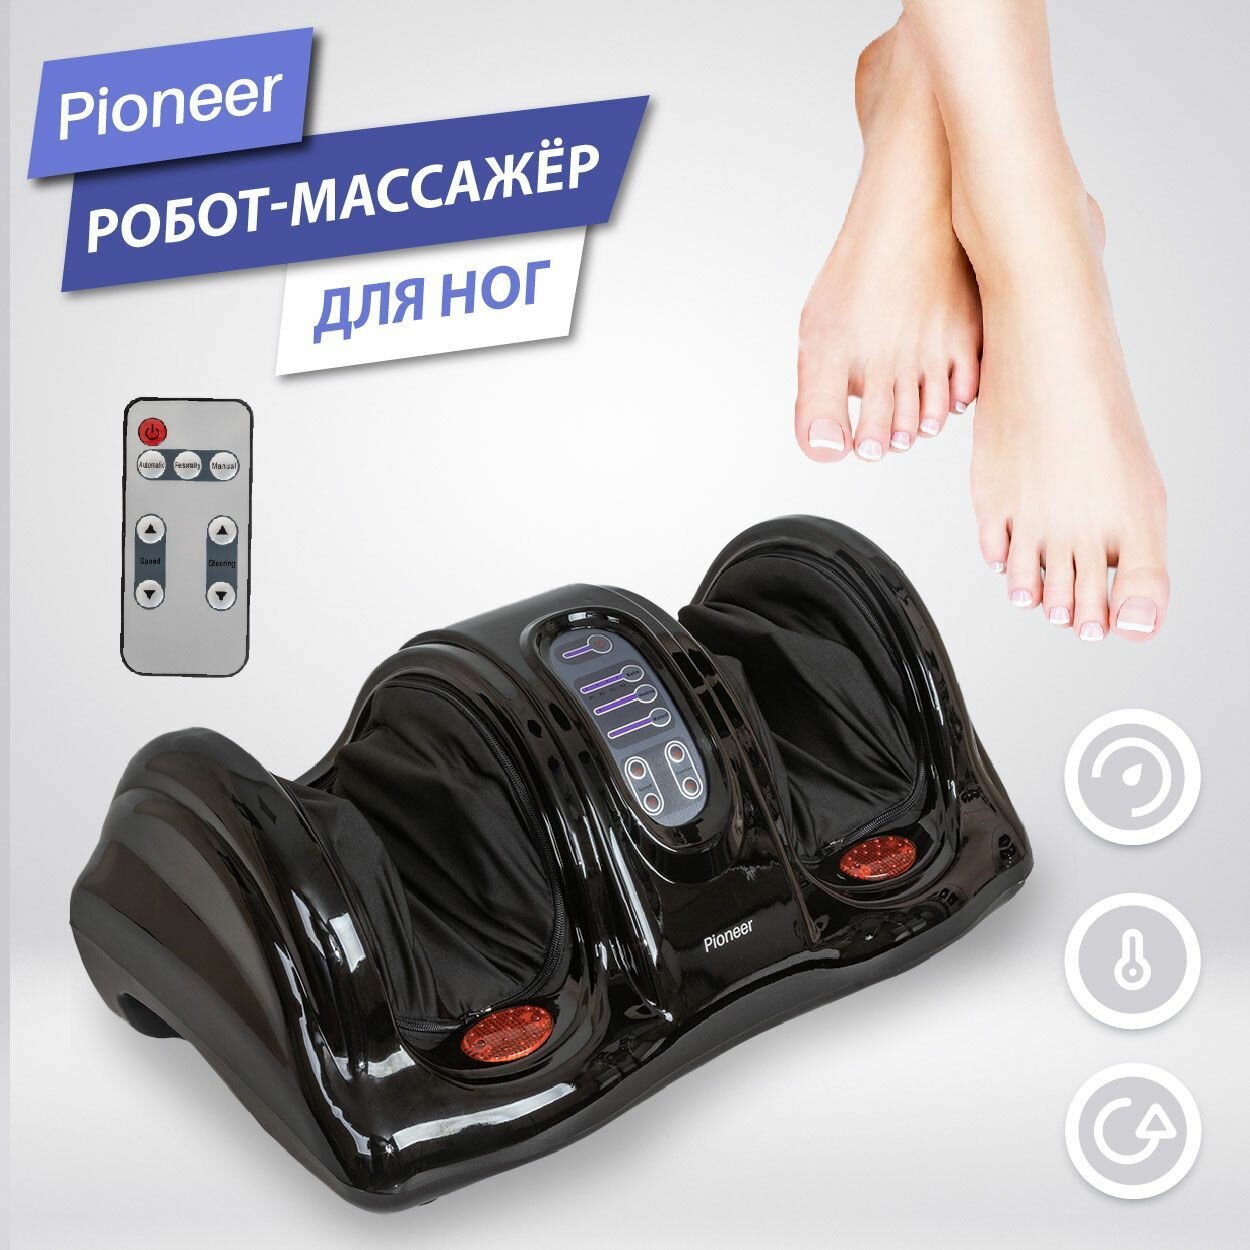 Многофункциональный интеллектуальный робот-массажер электрический для ног Pioneer PMF-050, black, 5 режимов работы, массаж шиацу.